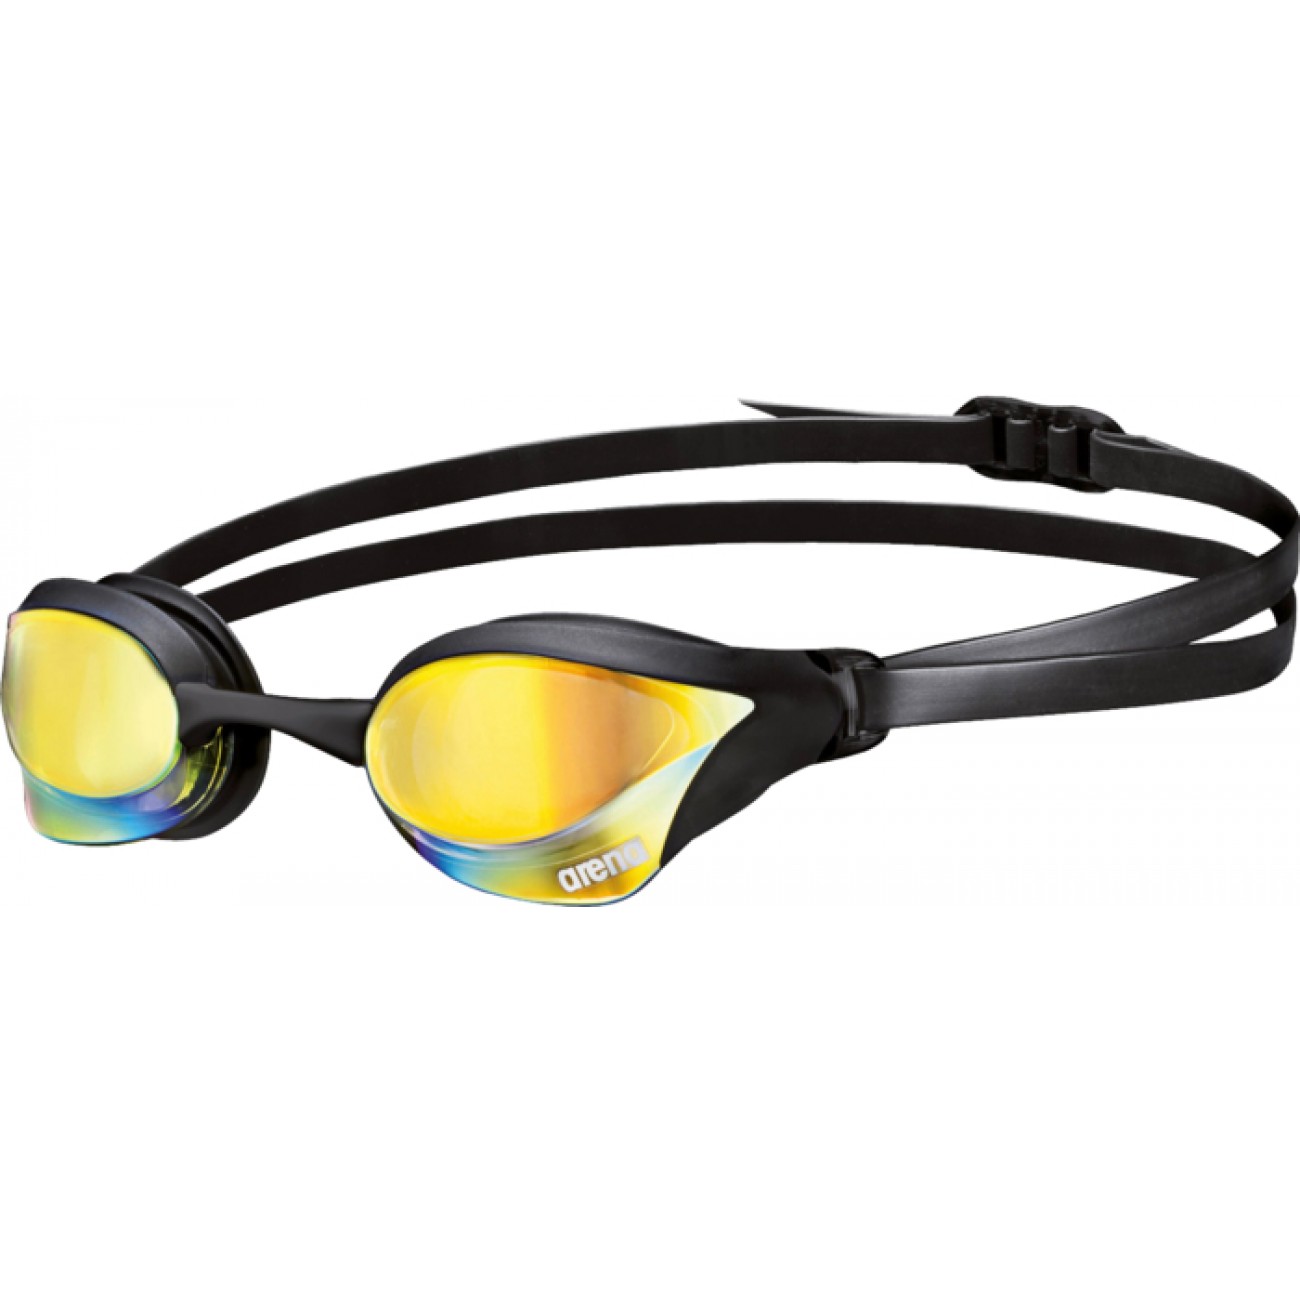 Очки для плавания cobra. Плавательные очки Арена Кобра. Очки для плавания Арена Кобра Core. Стартовые очки Кобра Арена. Стартовые очки для плавания Arena Кобра.